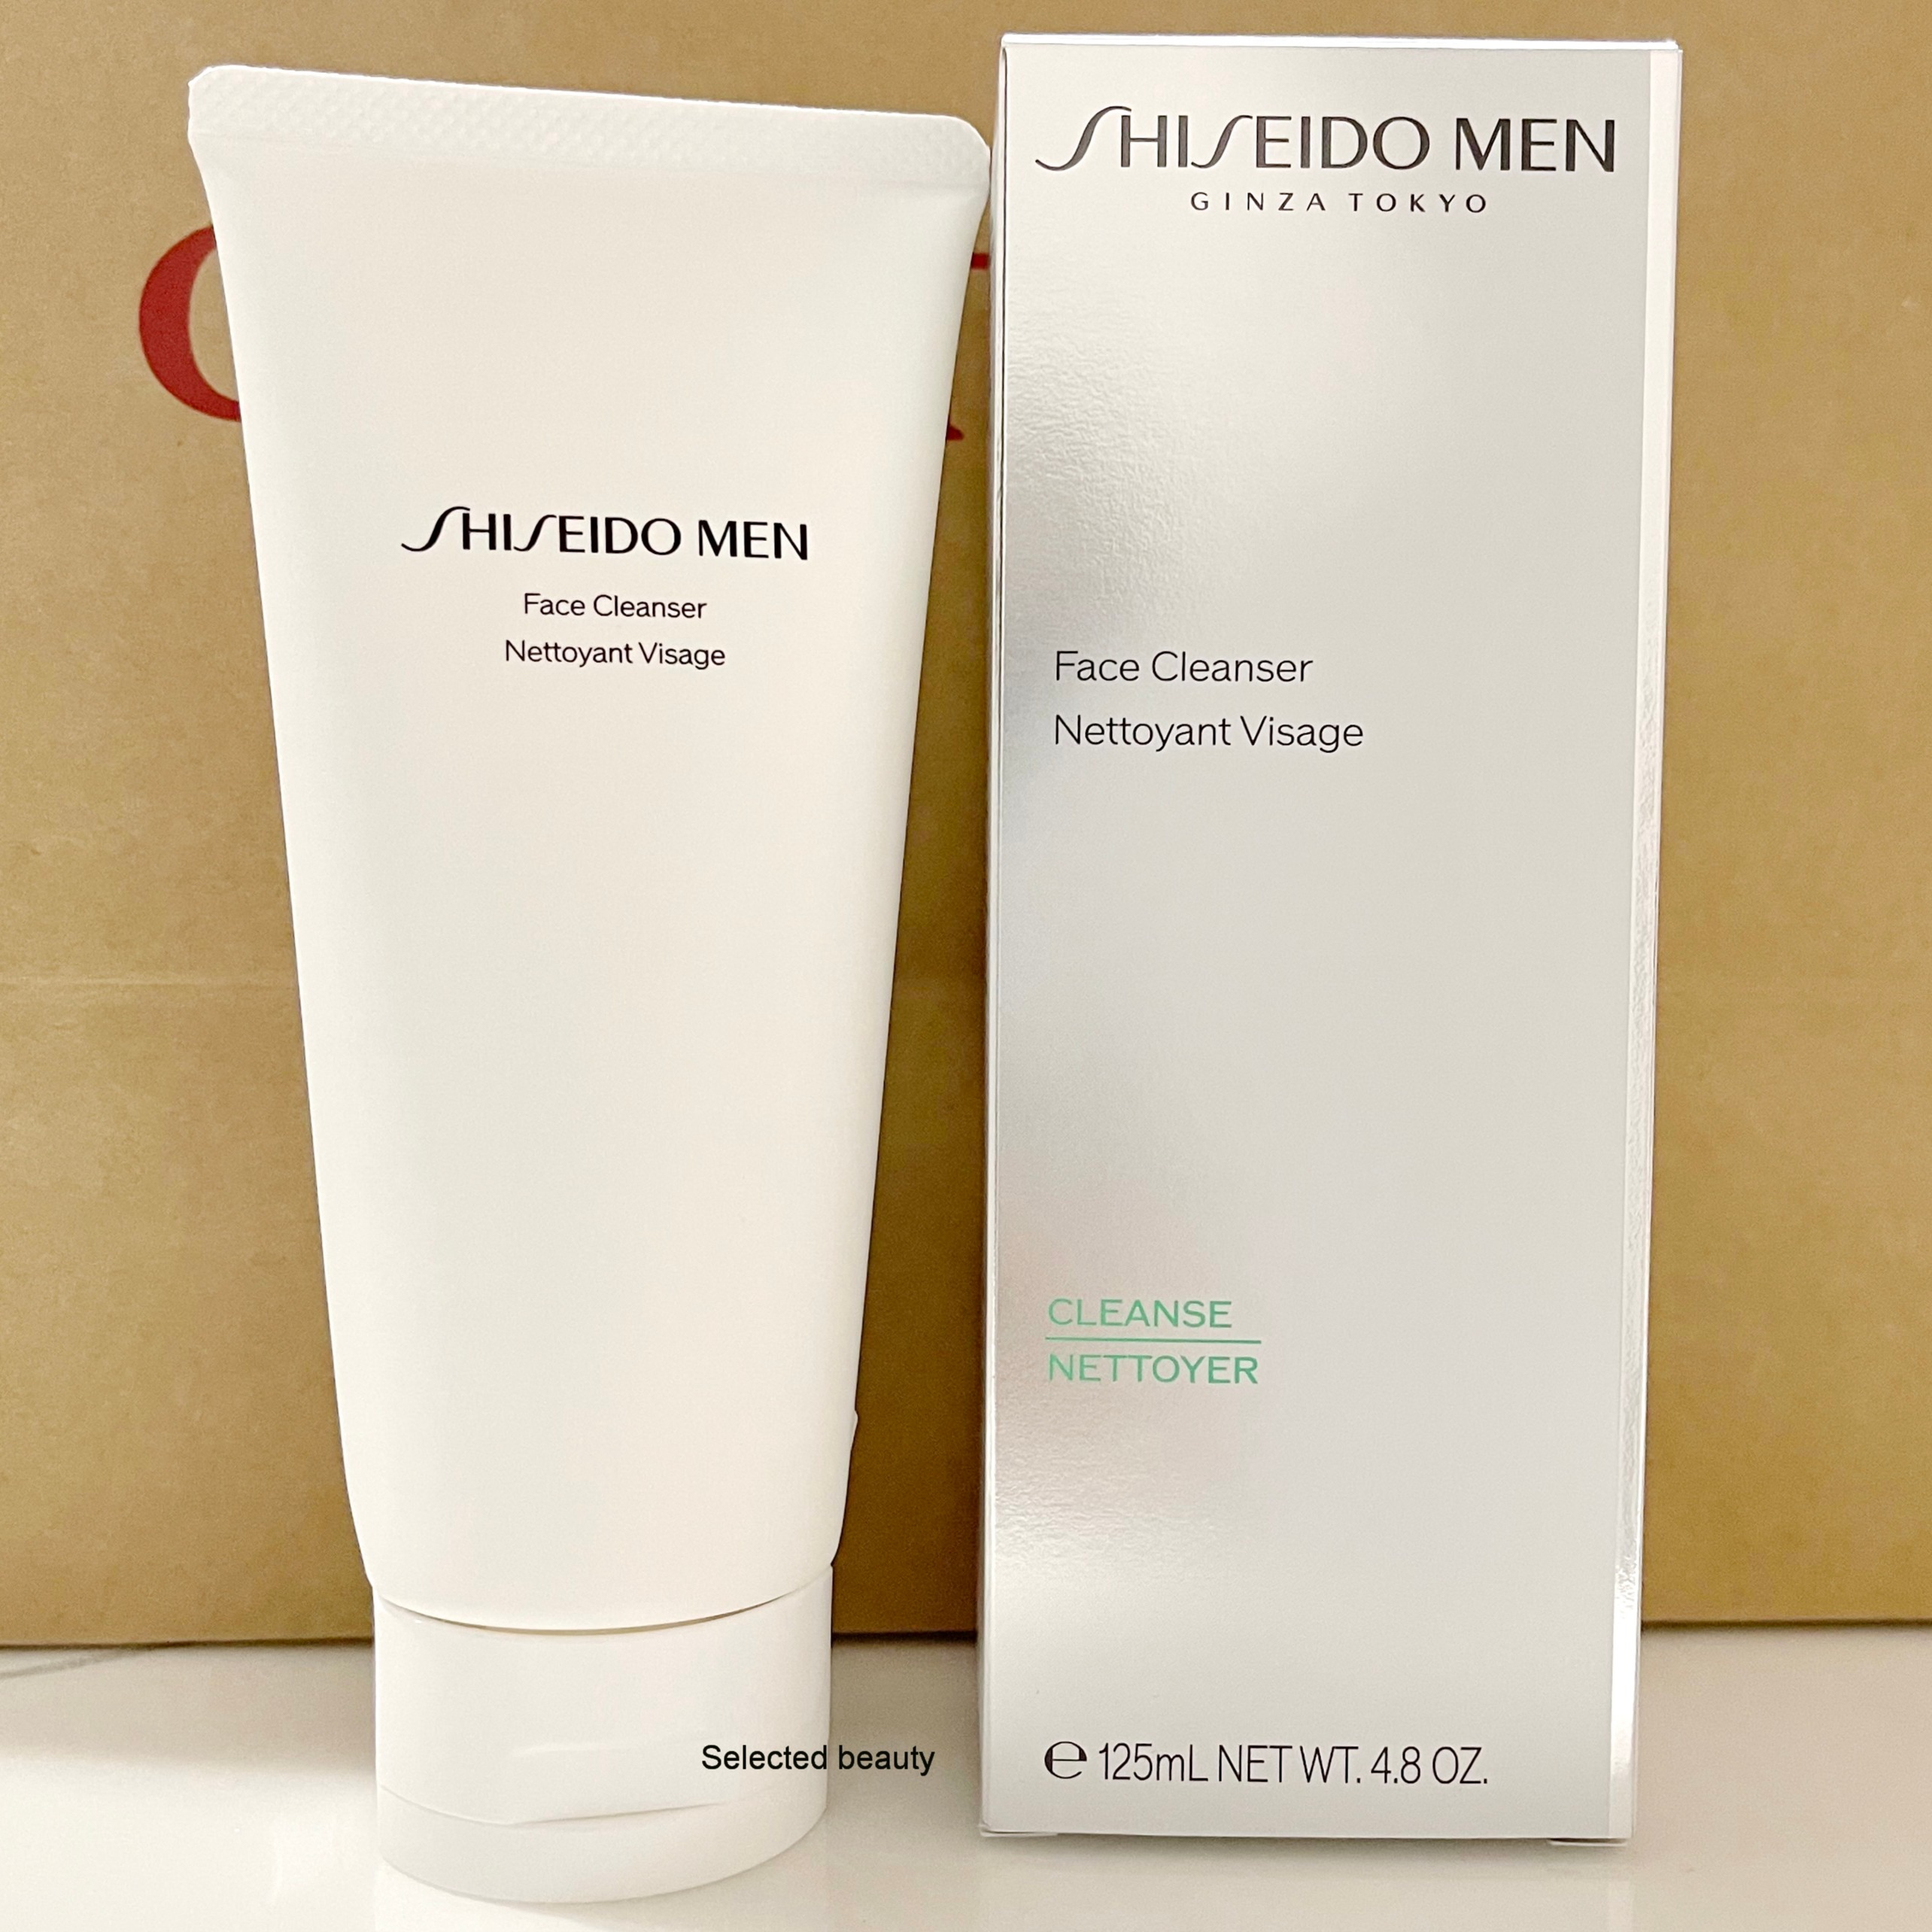 (รุ่นใหม่ล่าสุด) Shiseido Men Cleansing Foam 125ml โฟมล้างหน้าสำหรับผู้ชาย ผลิต 10/2020